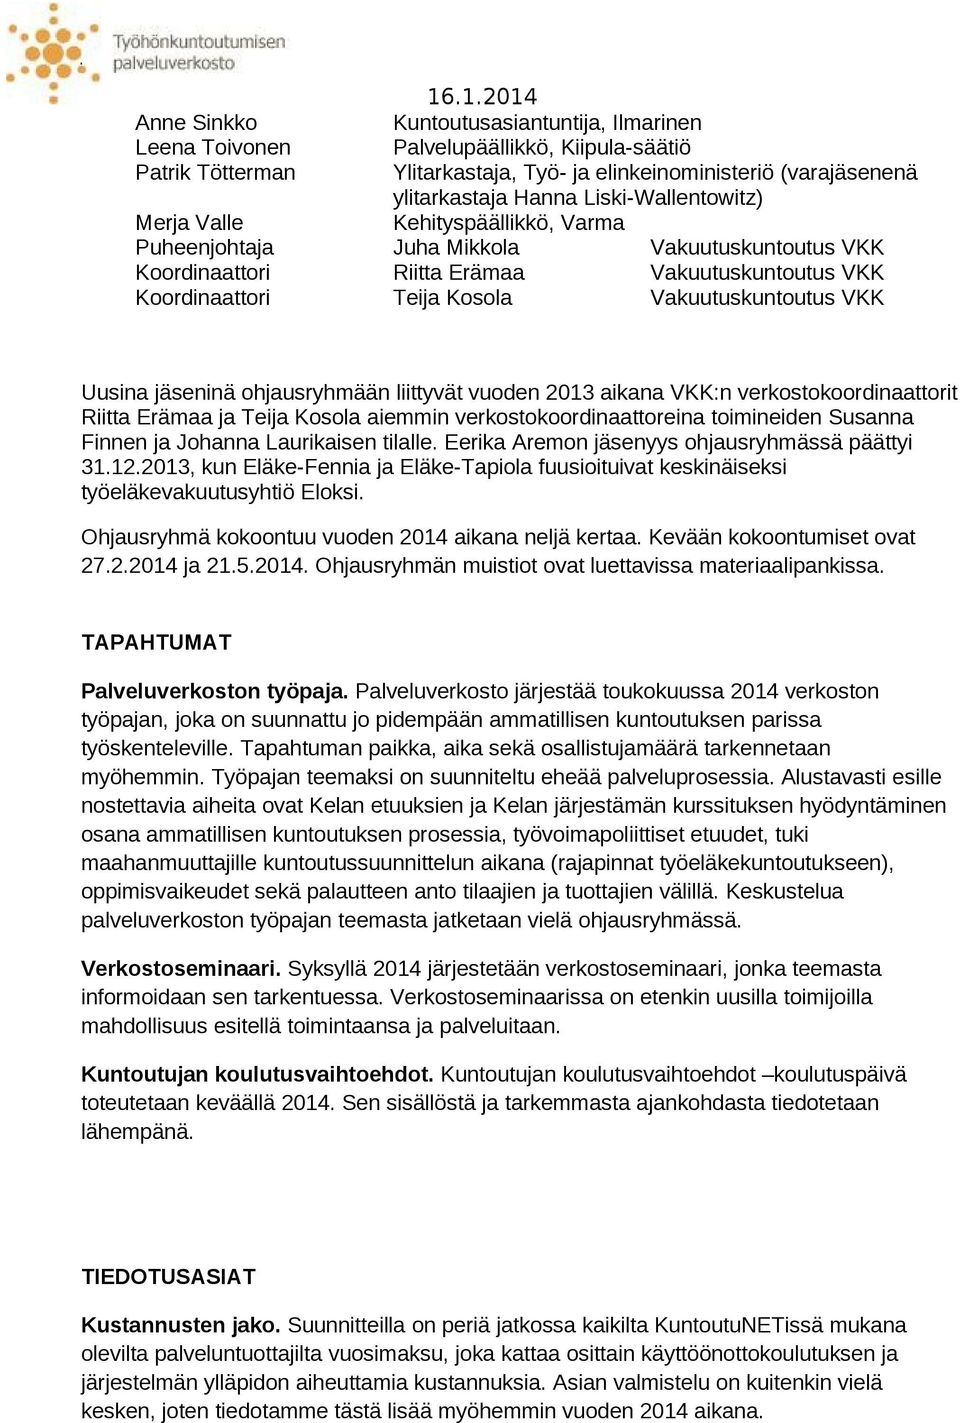 Vakuutuskuntoutus VKK Uusina jäseninä ohjausryhmään liittyvät vuoden 2013 aikana VKK:n verkostokoordinaattorit Riitta Erämaa ja Teija Kosola aiemmin verkostokoordinaattoreina toimineiden Susanna